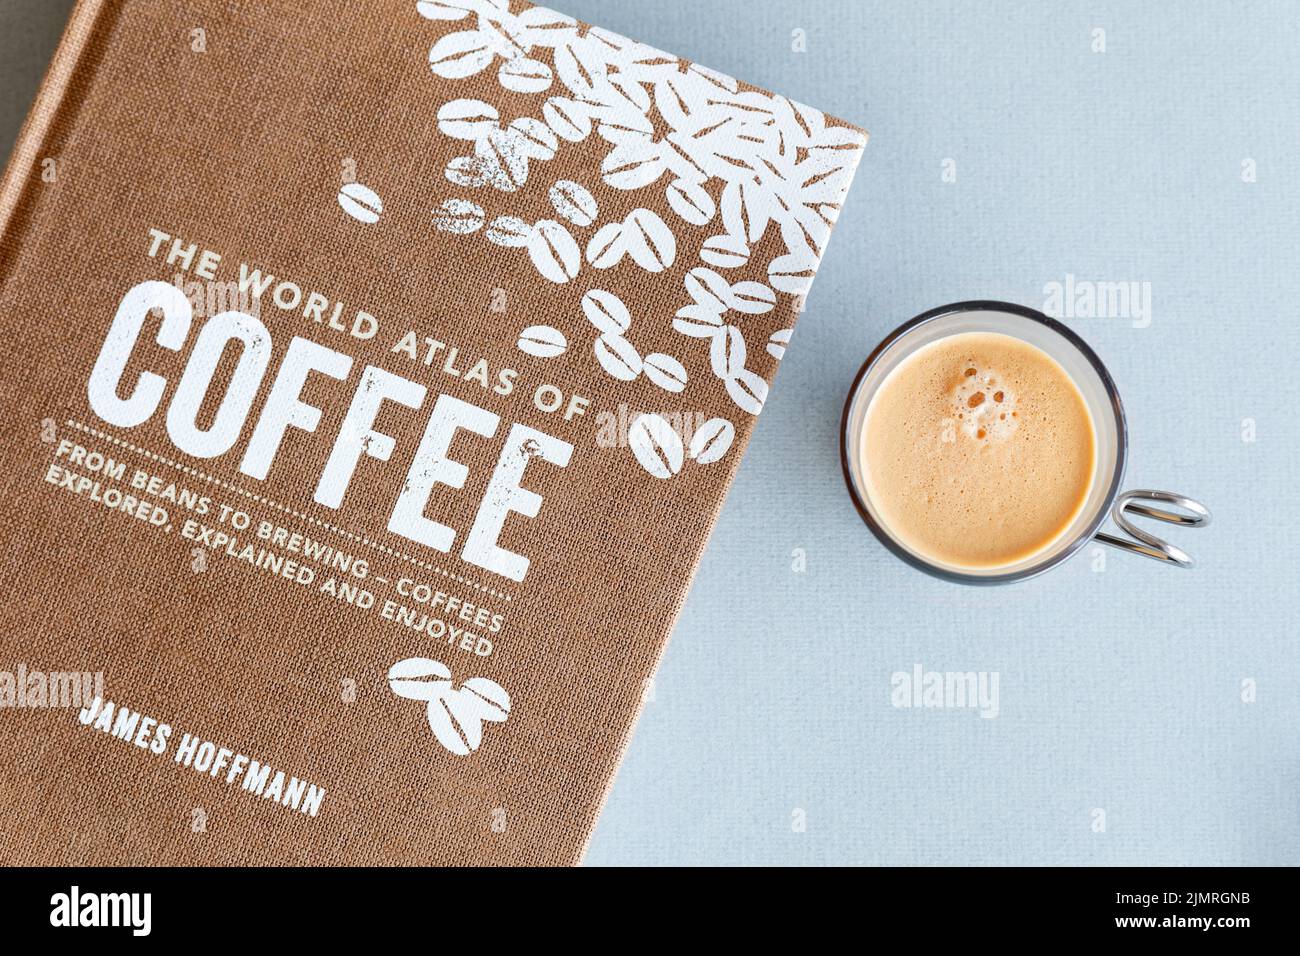 Un libro dedicato alla preparazione di caffè e caffè chiamato Atlante Mondiale del caffè scritto da James Hoffmann. Un caffè espresso si trova accanto al libro Foto Stock